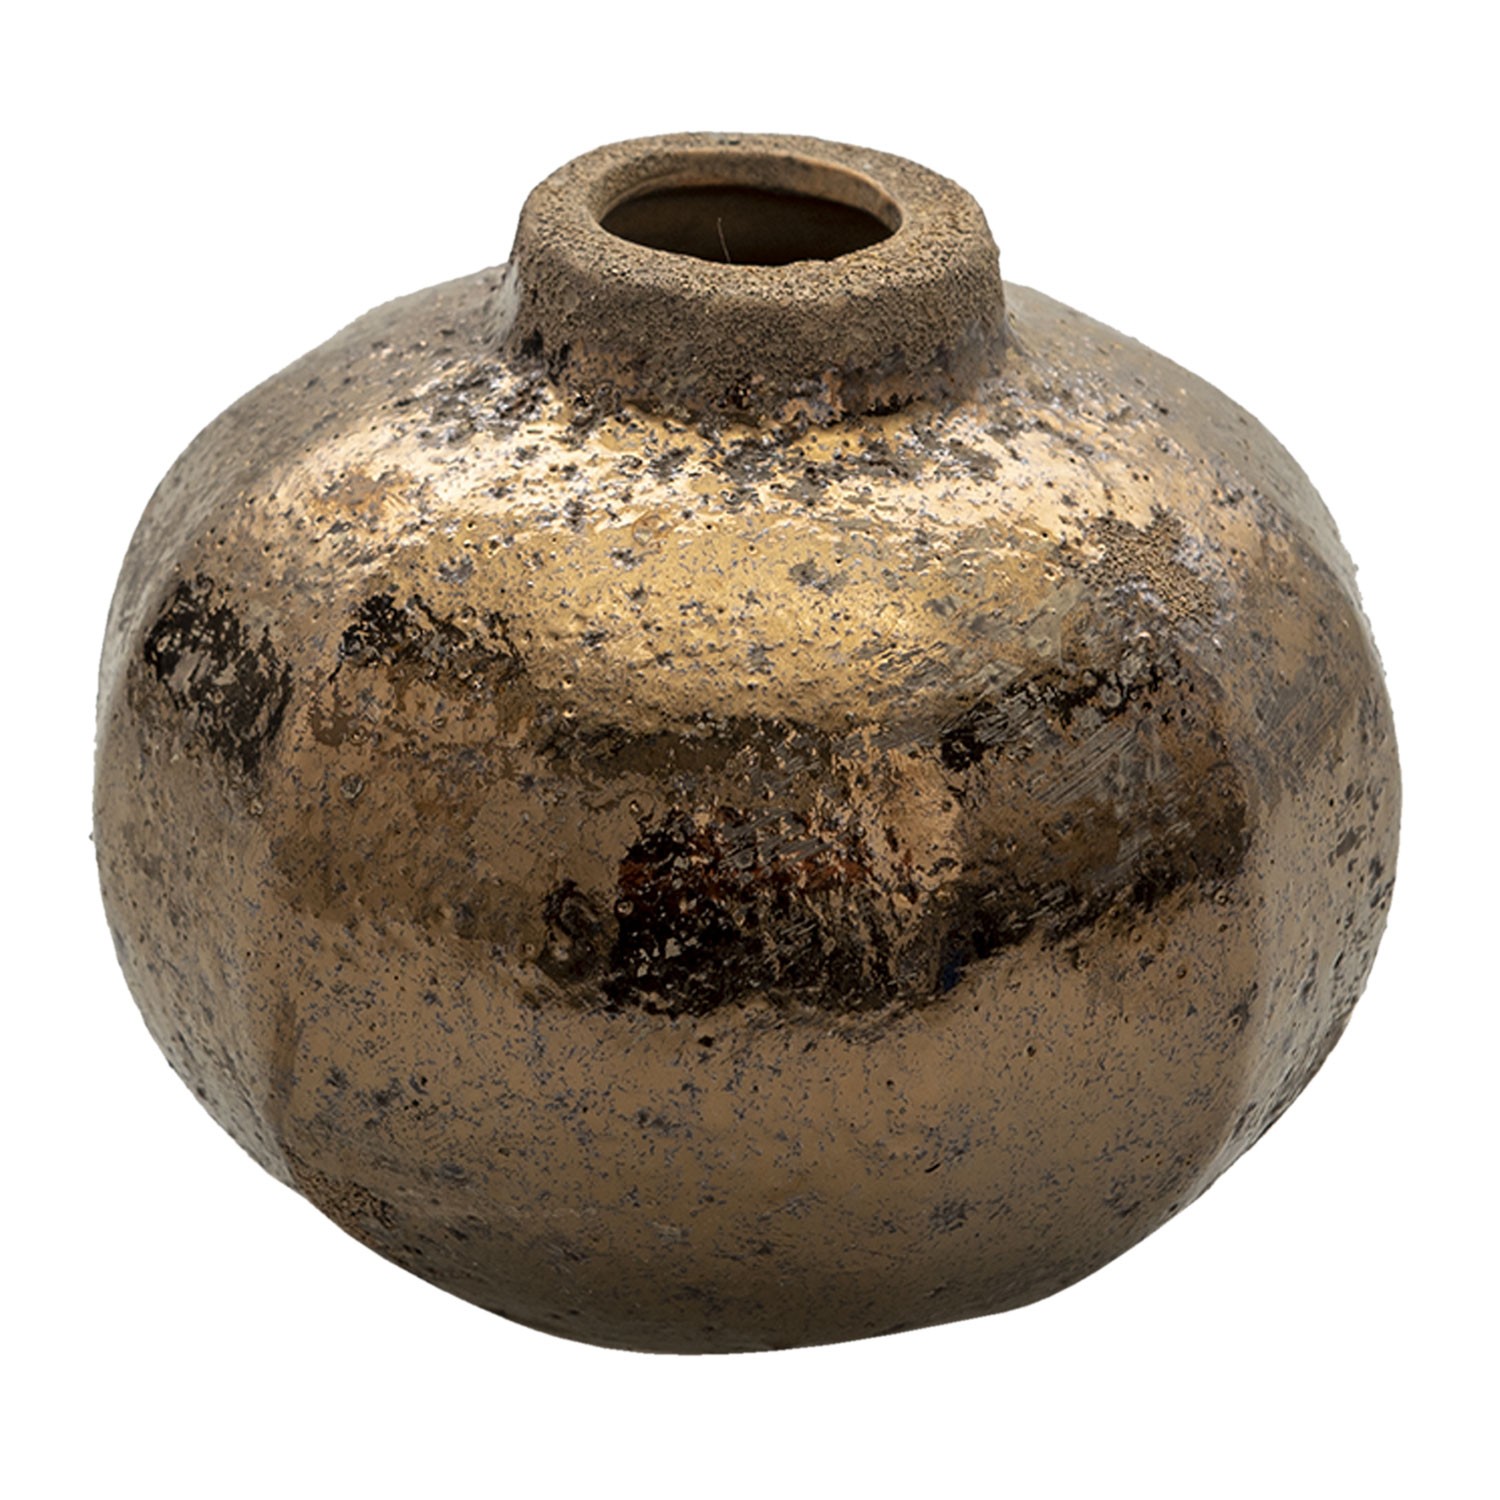 Hnědá keramická váza s bronzovou patinou Leann - Ø 12*10 cm 6CE1312